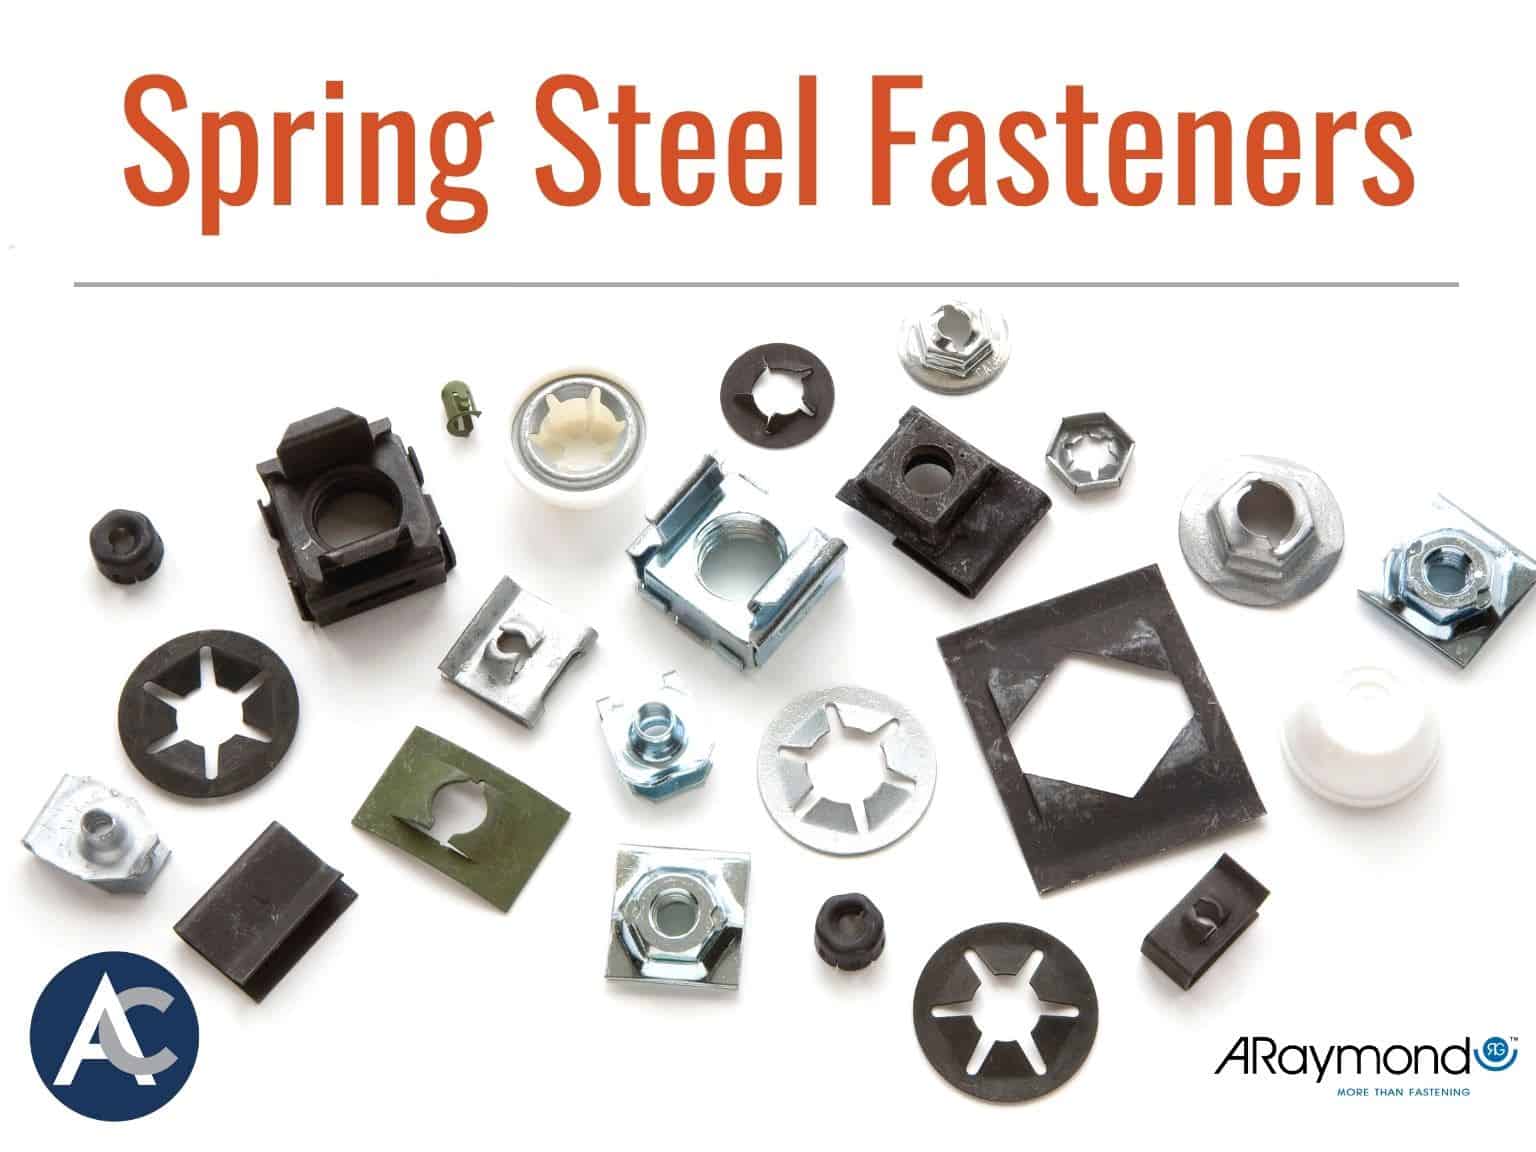 Spring Steel Fasteners, Speed Nuts